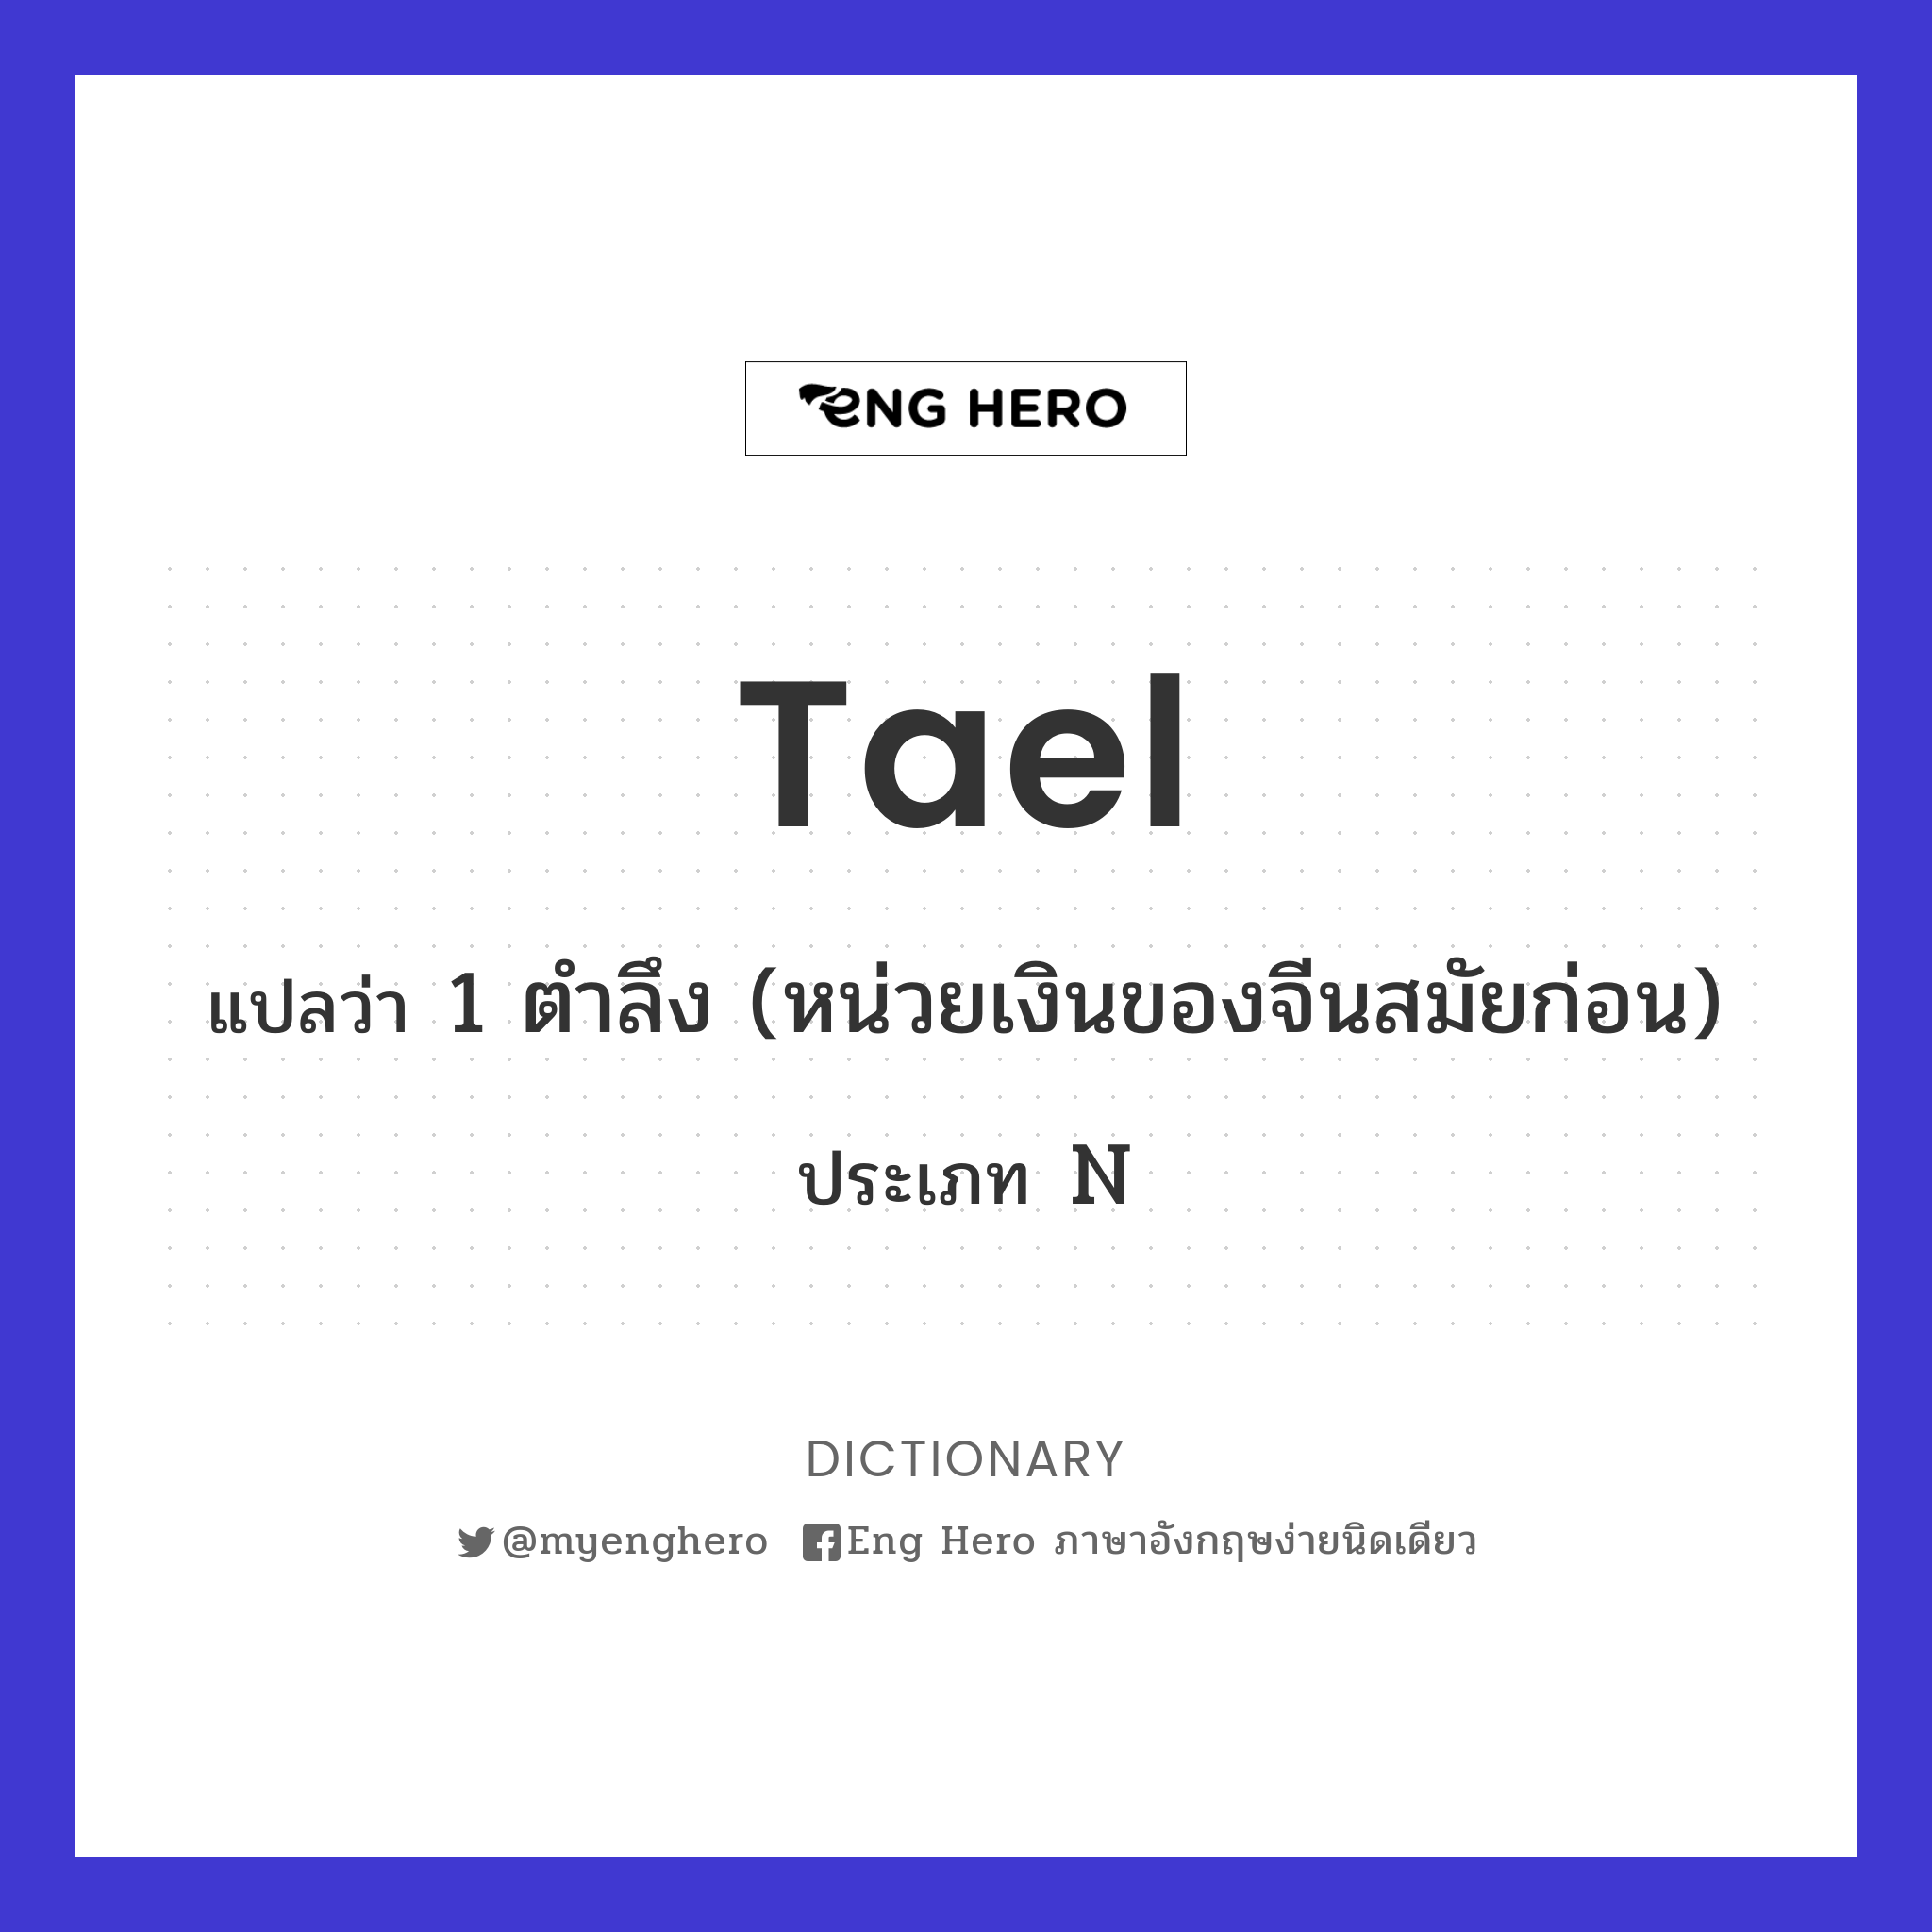 Tael แปลว่า 1 ตำลึง (หน่วยเงินของจีนสมัยก่อน) | Eng Hero เรียนภาษาอังกฤษ  ออนไลน์ ฟรี